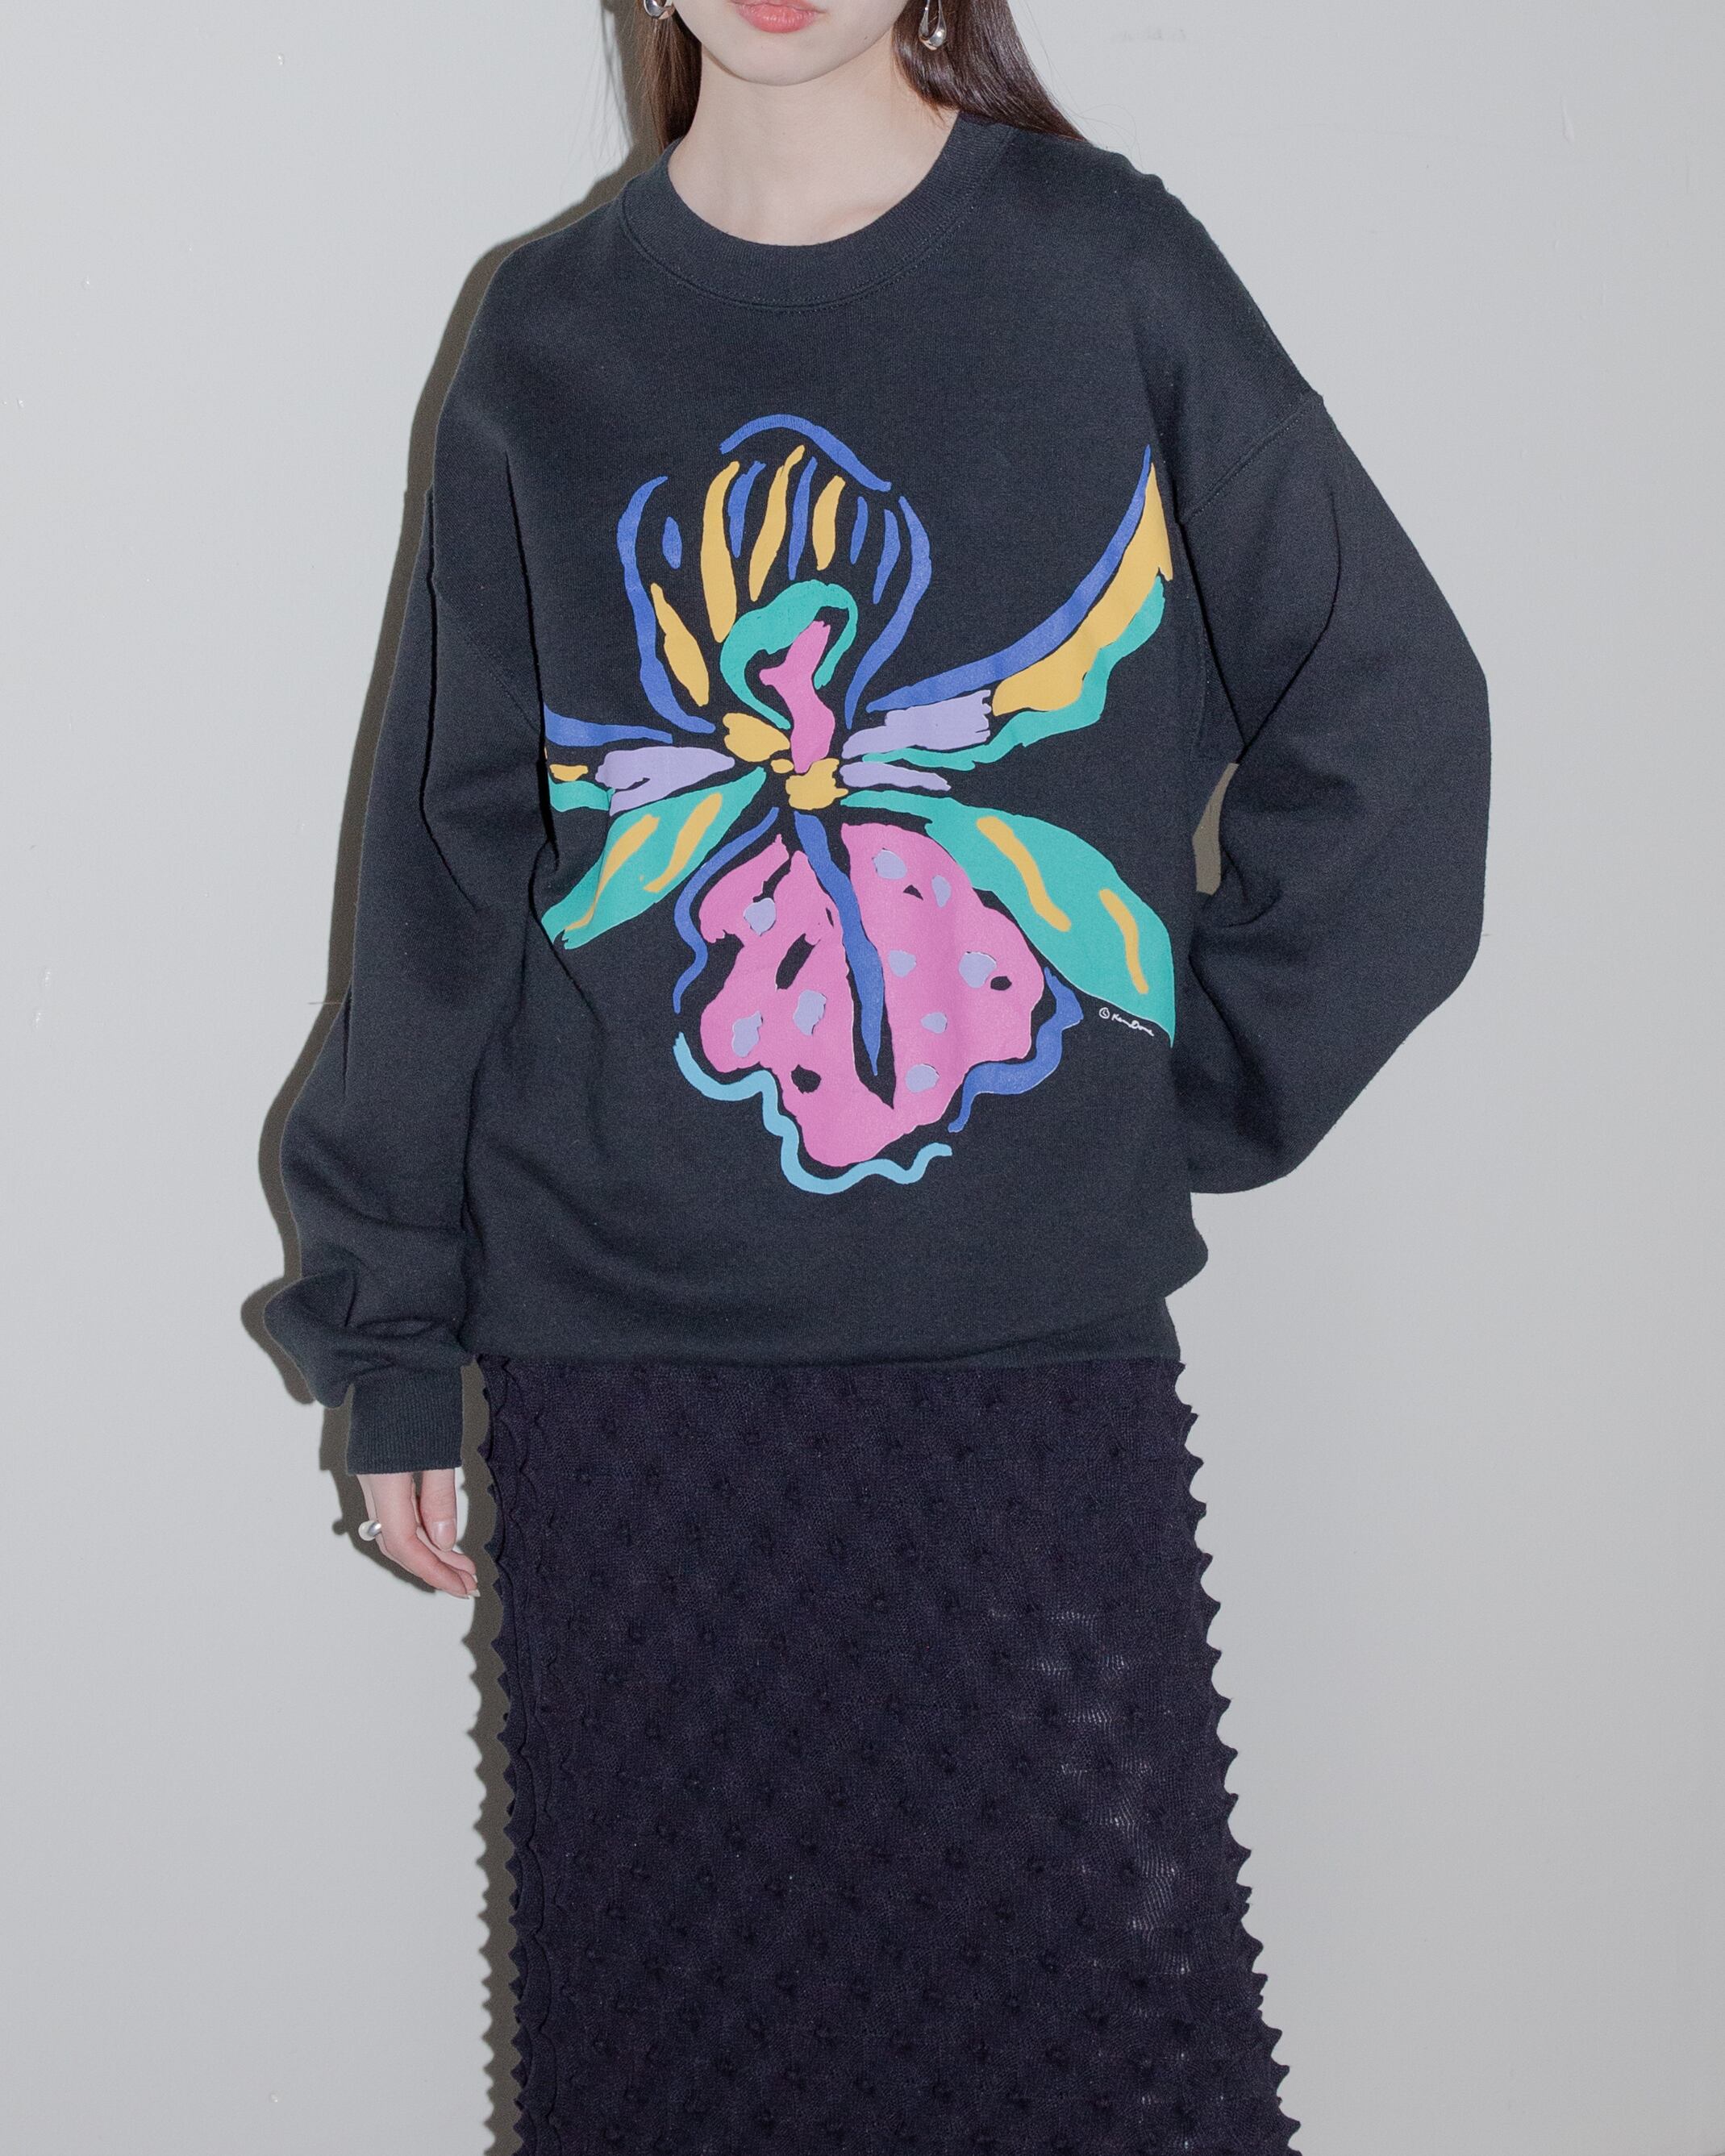 1980s floral print sweatshirt